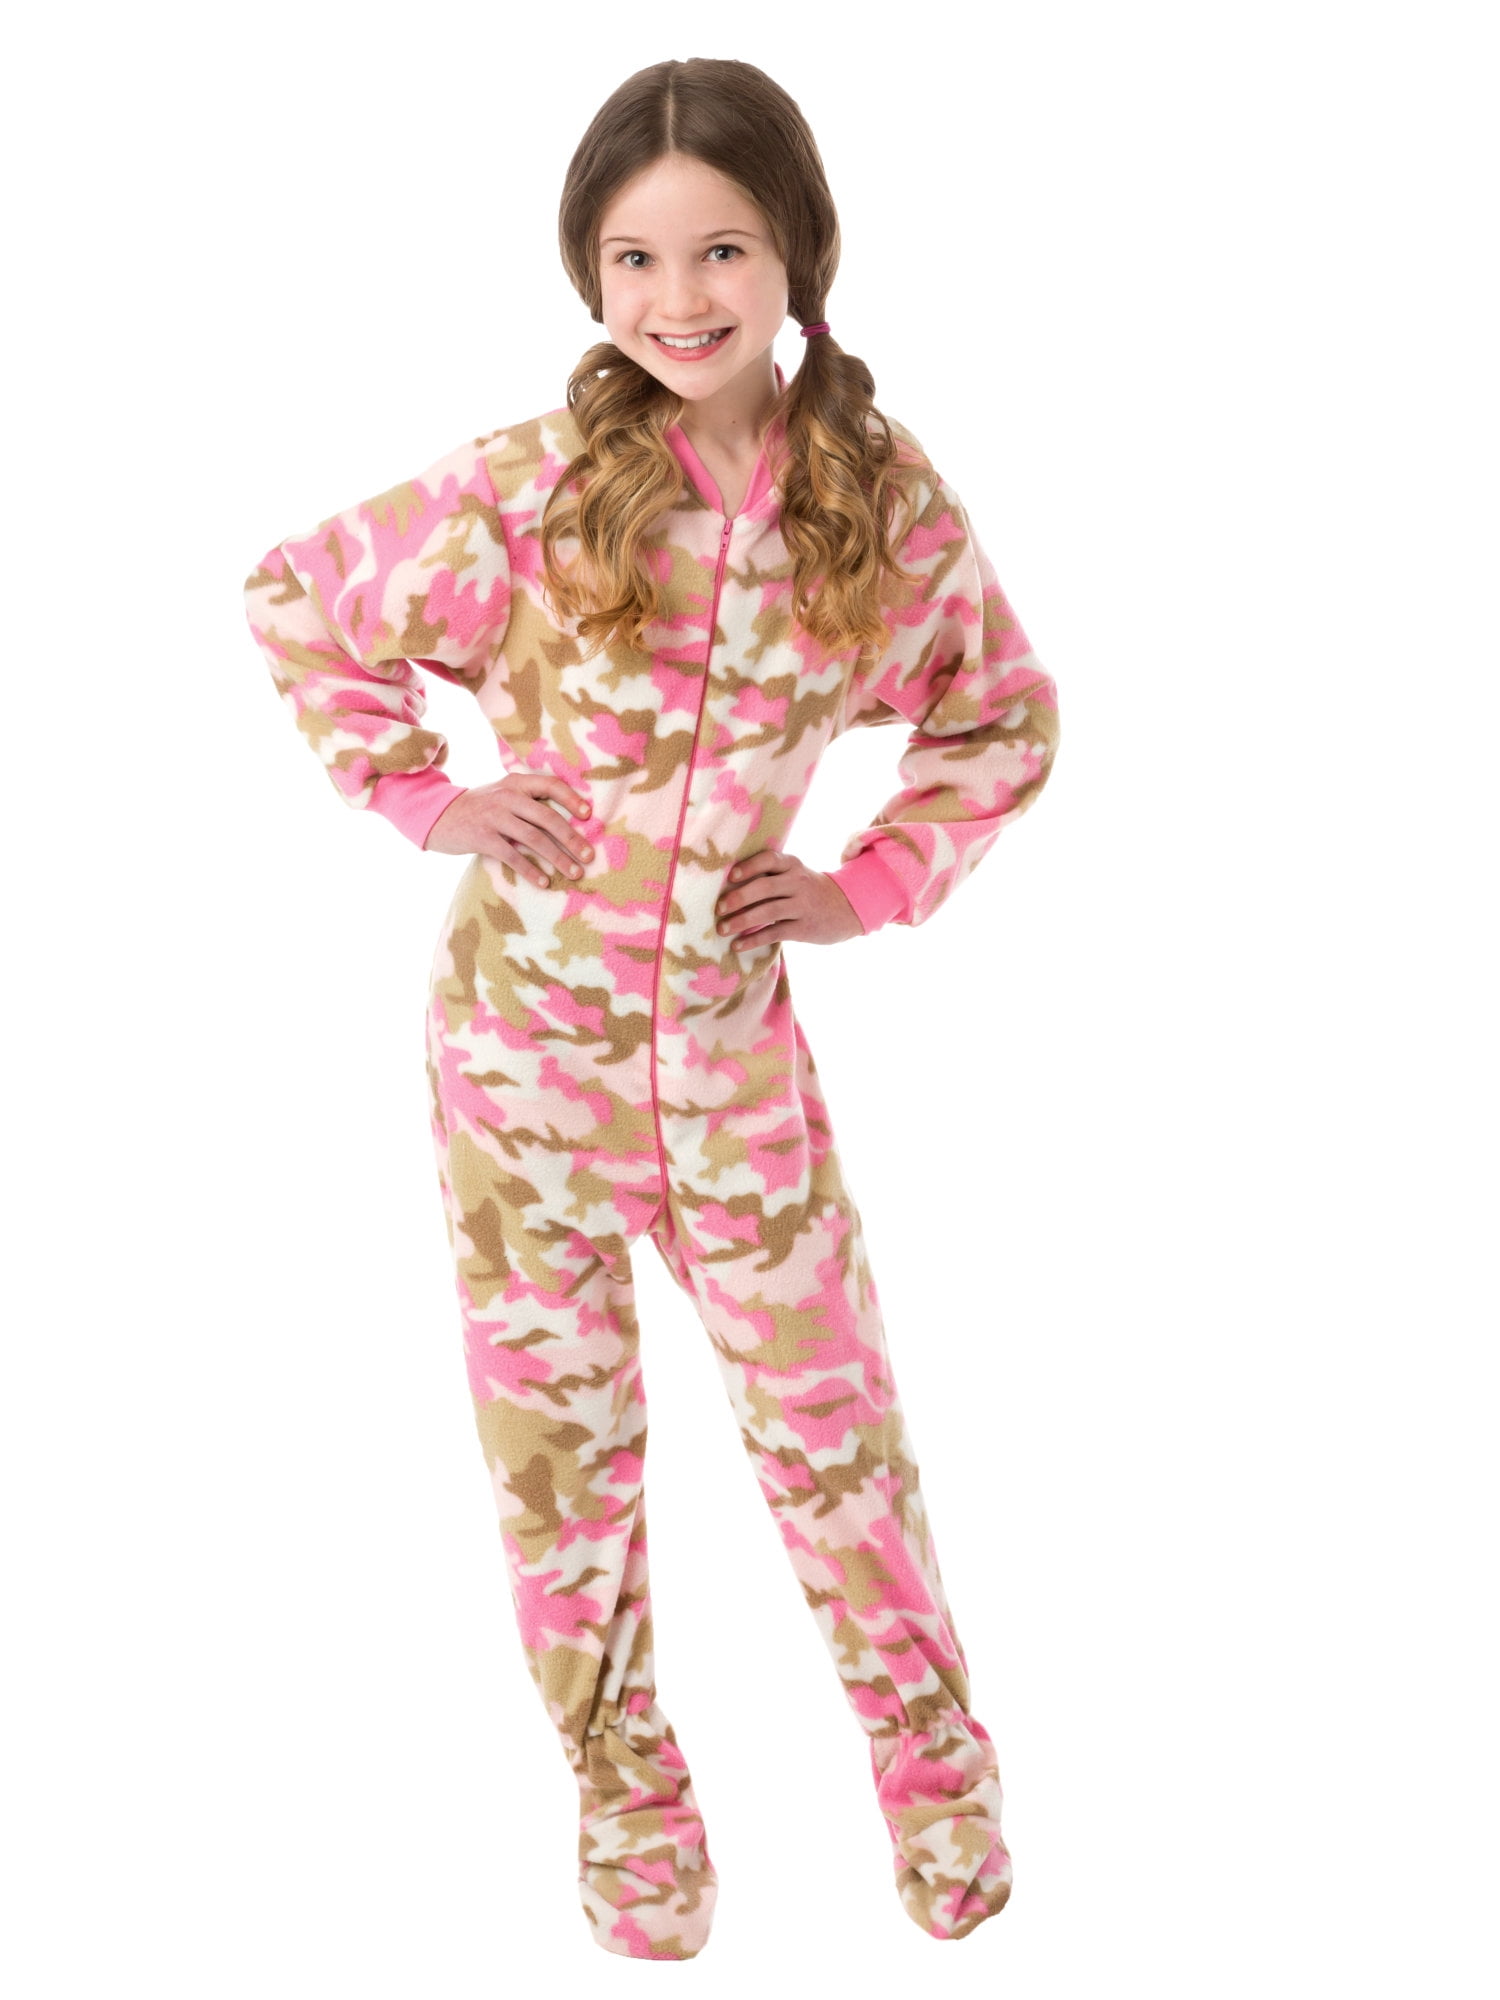 Girls Pyjama Heart Camouflage All In One Jumpsuit Camo Nightwear Fleece Hood 